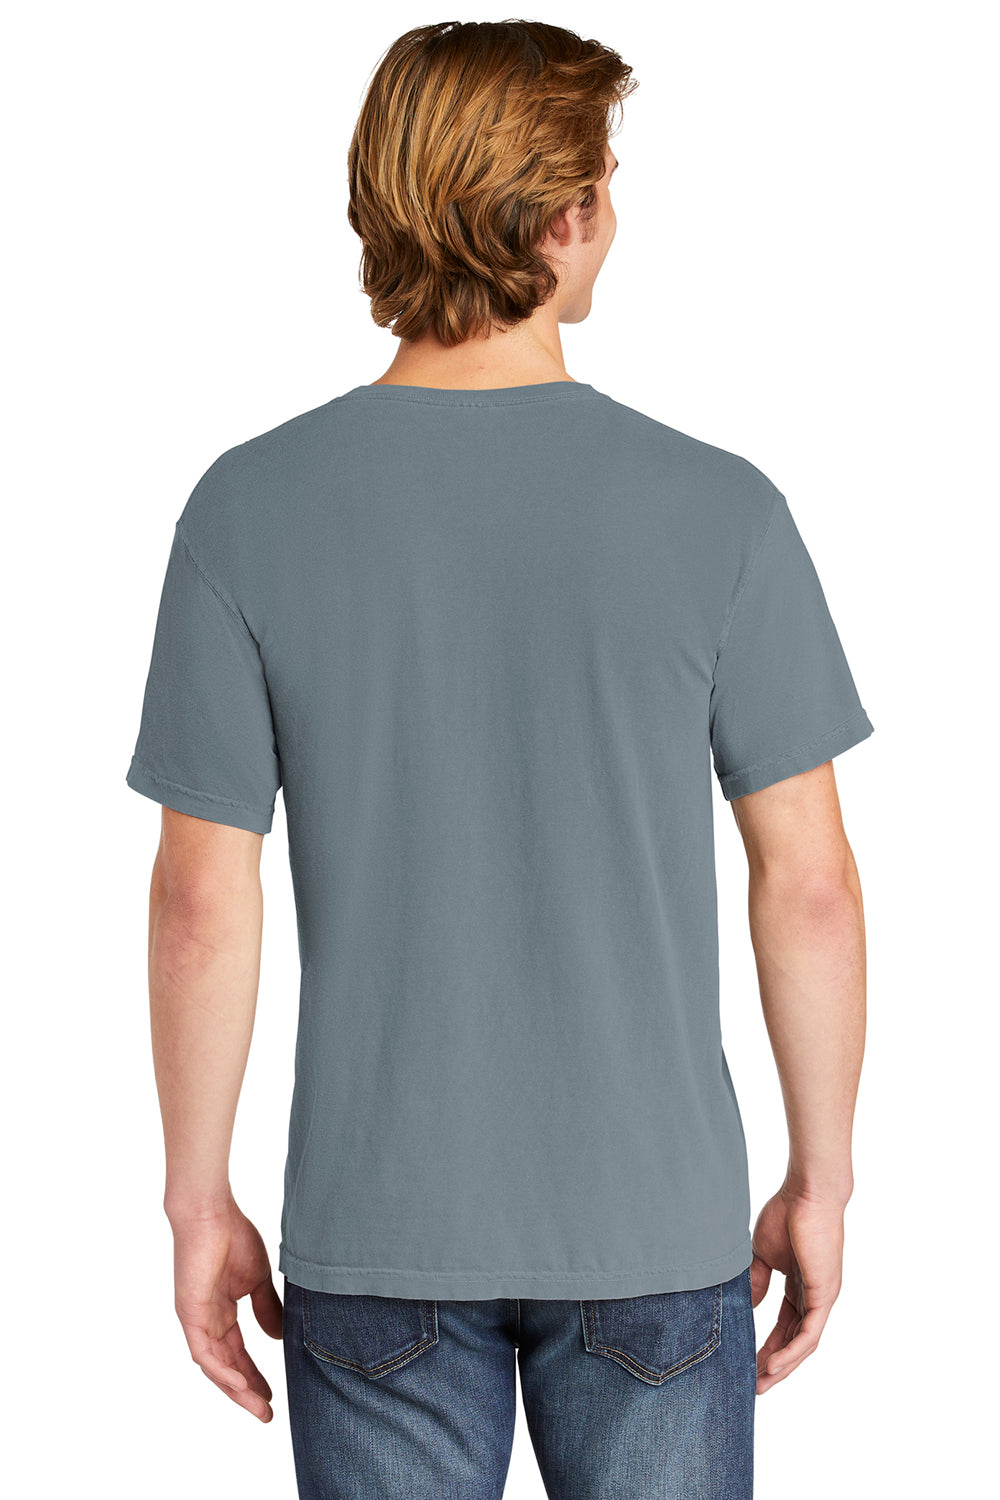 Comfort Colors 6030/6030CC Mens Short Sleeve Crewneck T-Shirt w/ Pocket Granite Grey Back